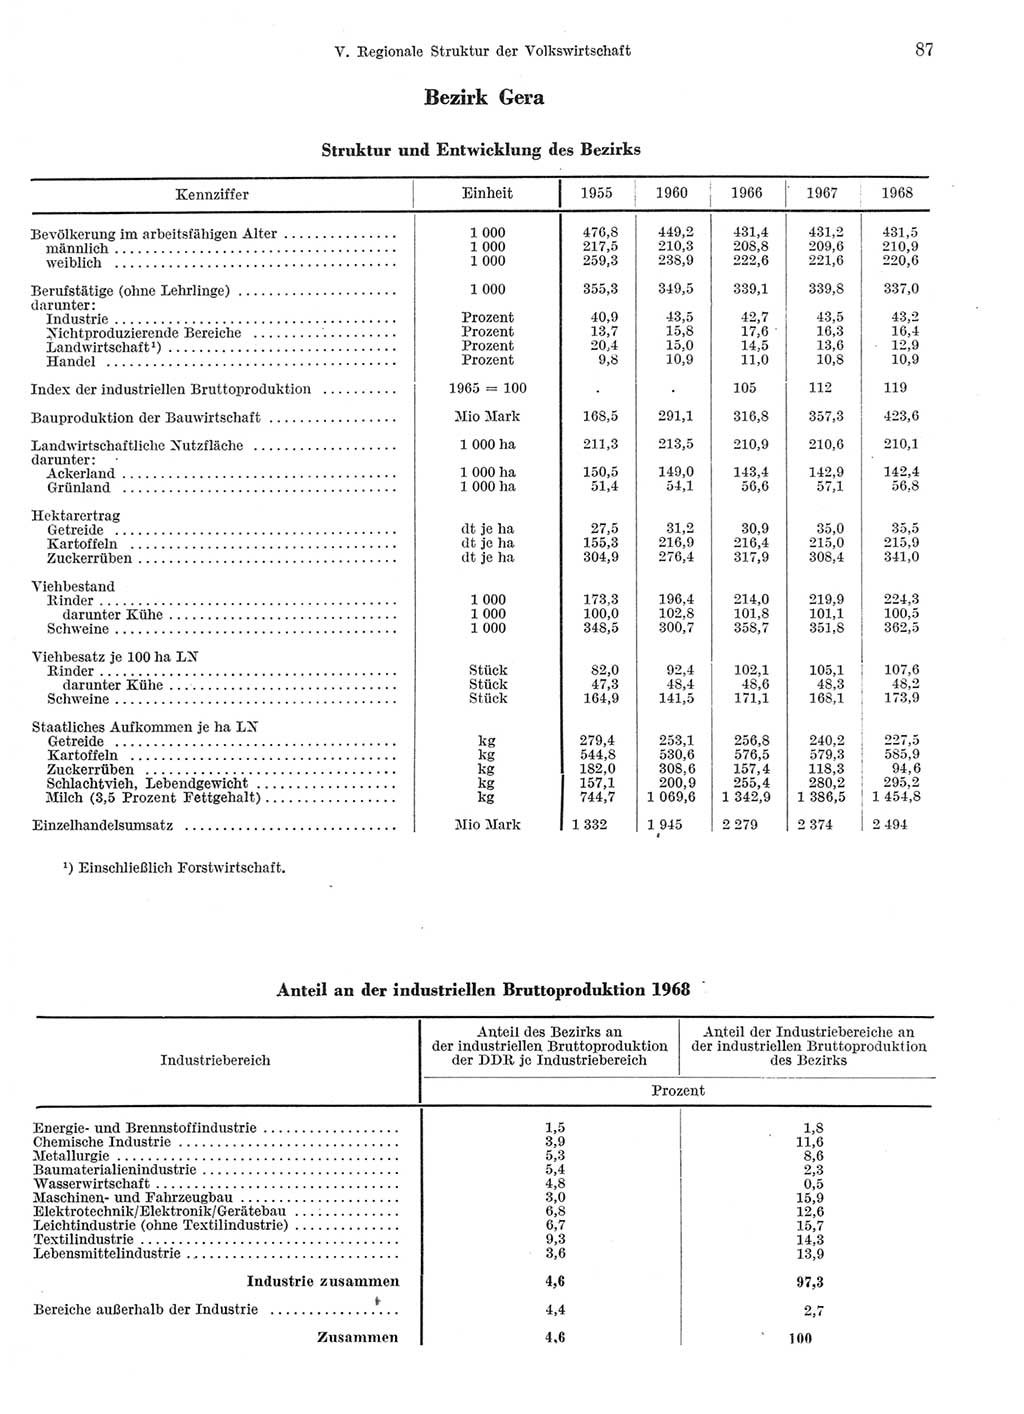 Statistisches Jahrbuch der Deutschen Demokratischen Republik (DDR) 1969, Seite 87 (Stat. Jb. DDR 1969, S. 87)